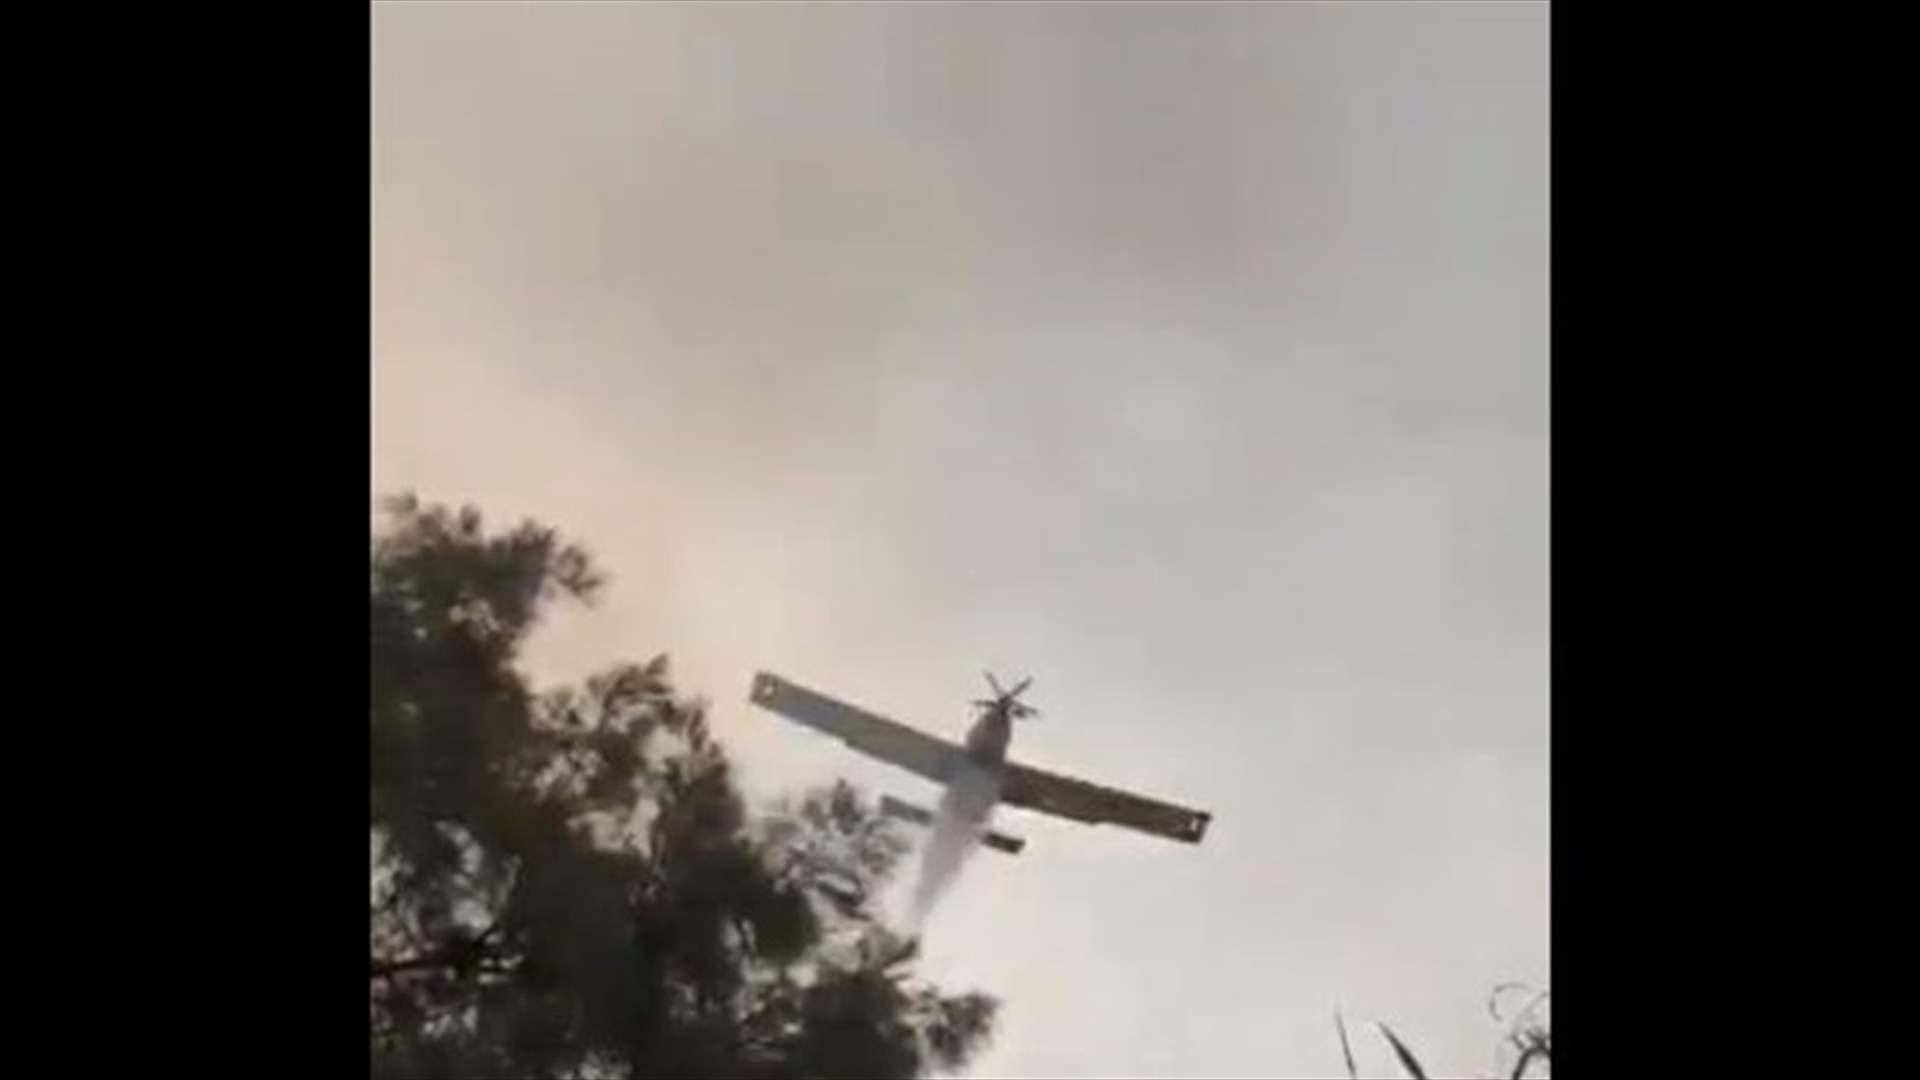 الطائرة القبرصية ترمي المياه على عناصر الدفاع المدني بدل النيران (فيديو)